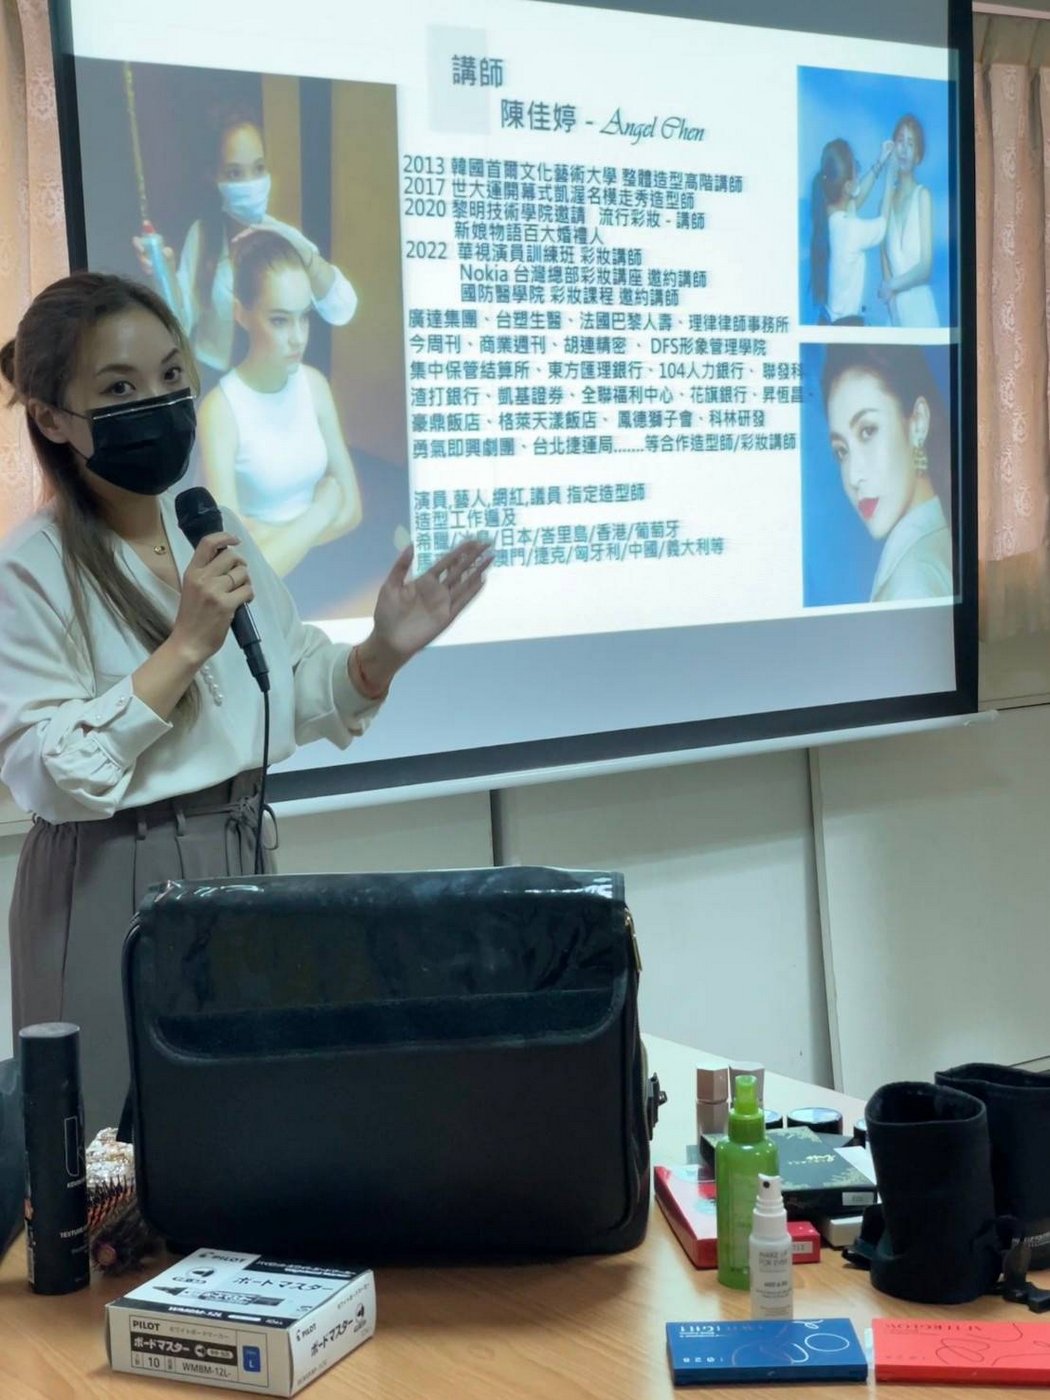 彩妝教學課程 東南科技大學 表演藝術系邀約教學